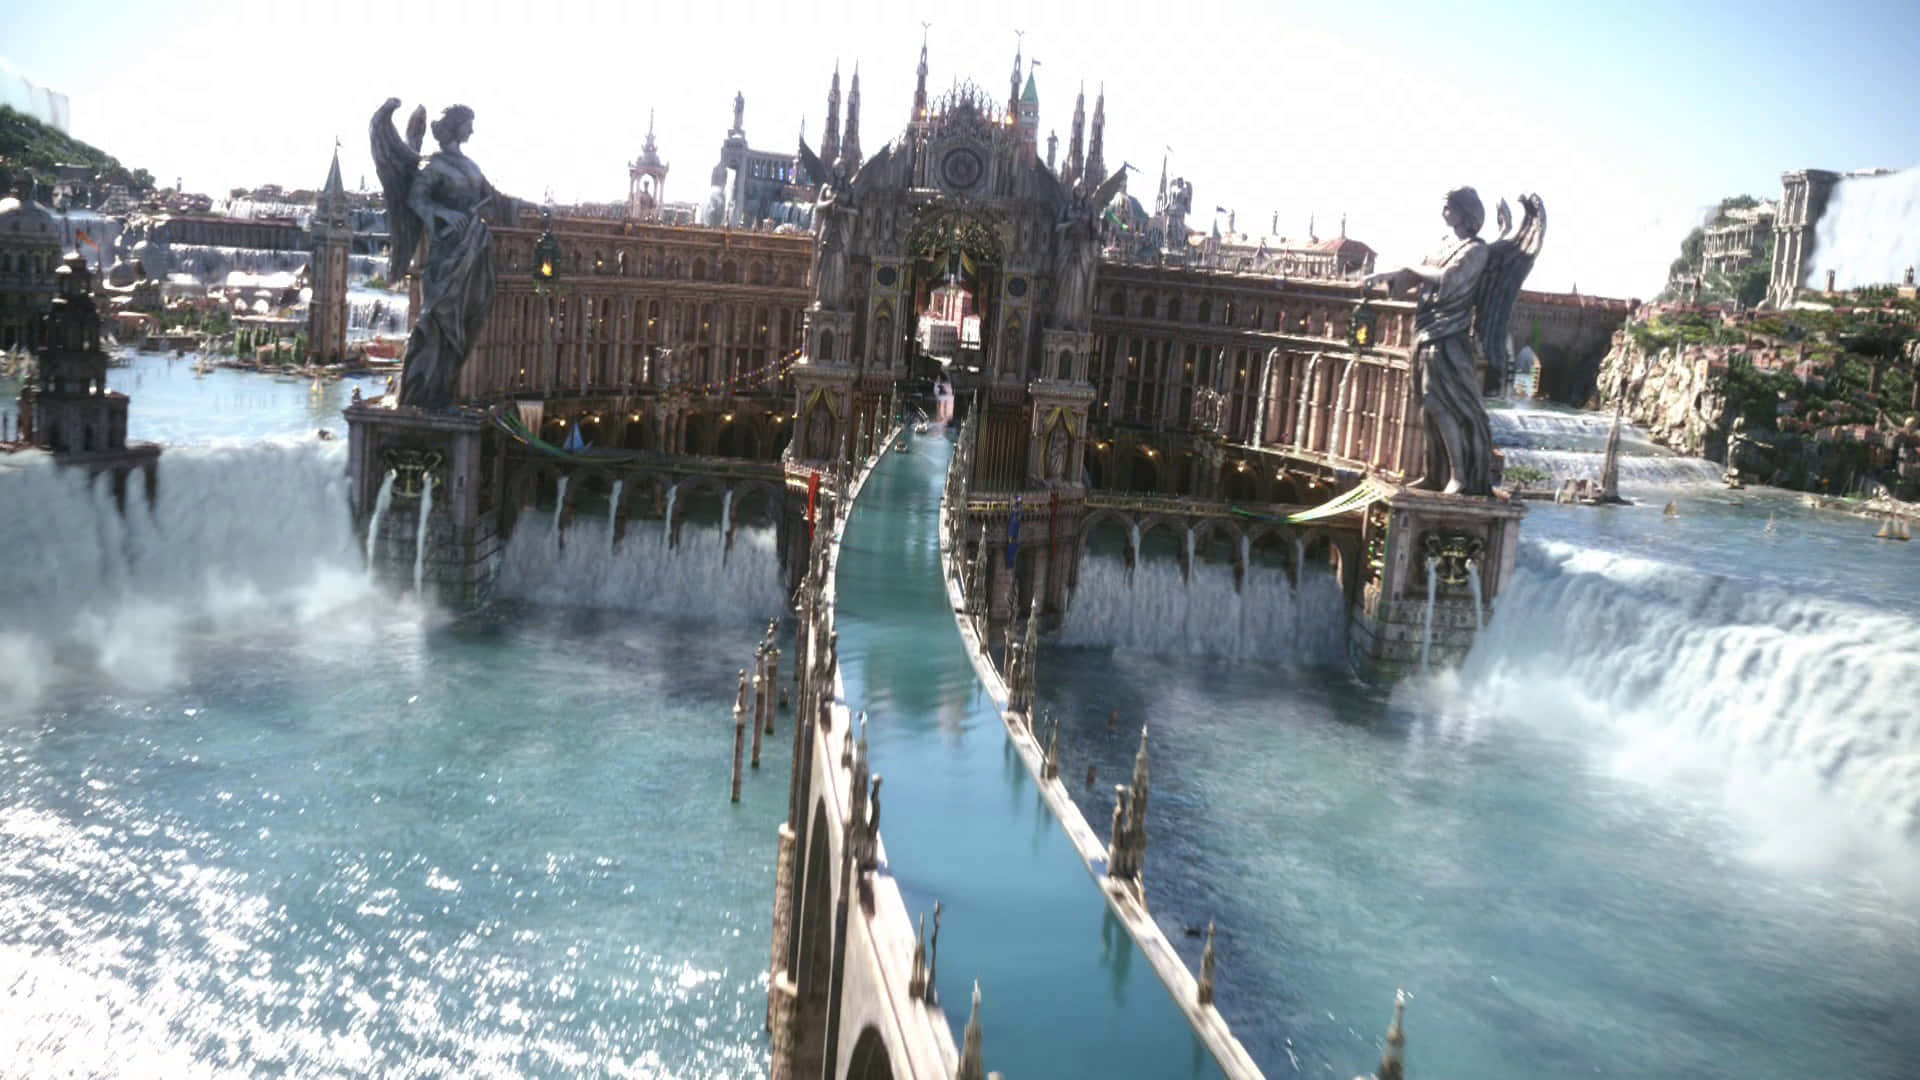 Leville Altissia City Final Fantasy XV Background